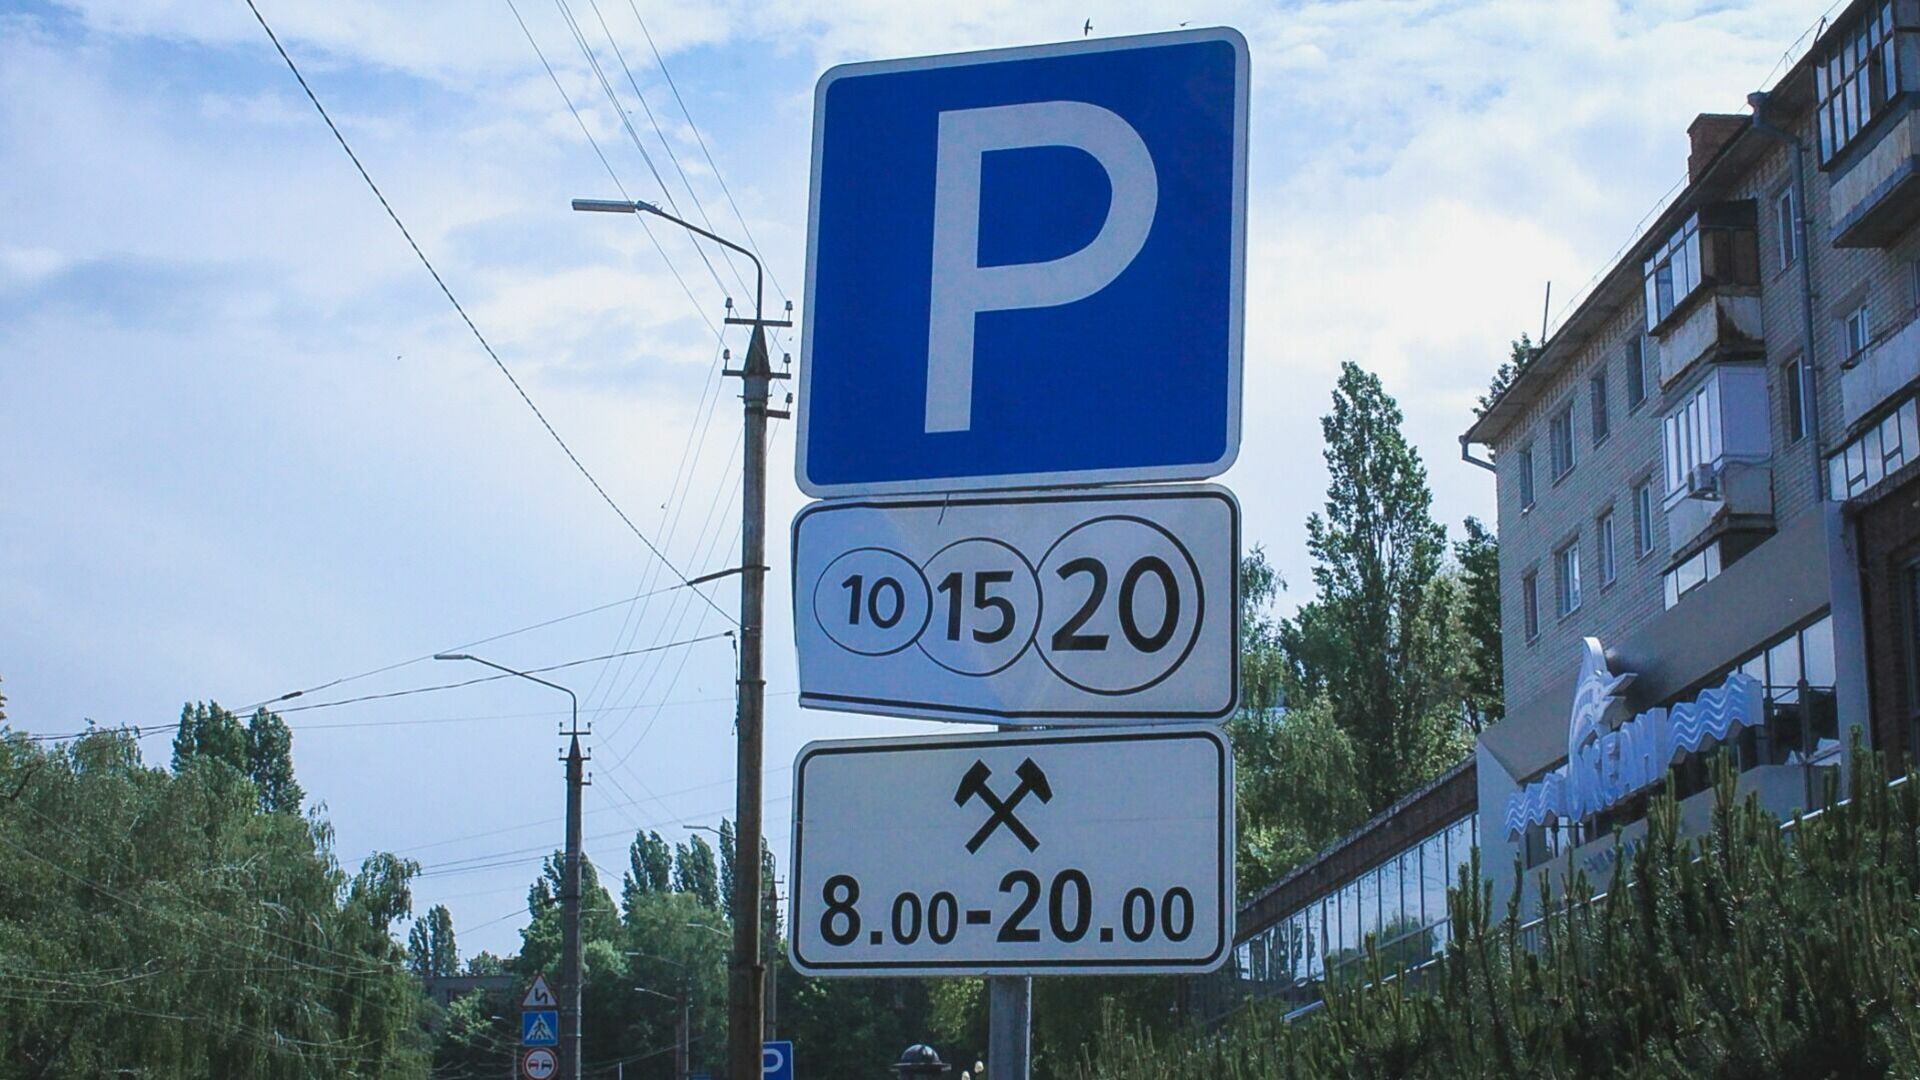 Еще две платные парковки начали работу в Нижнем Новгороде